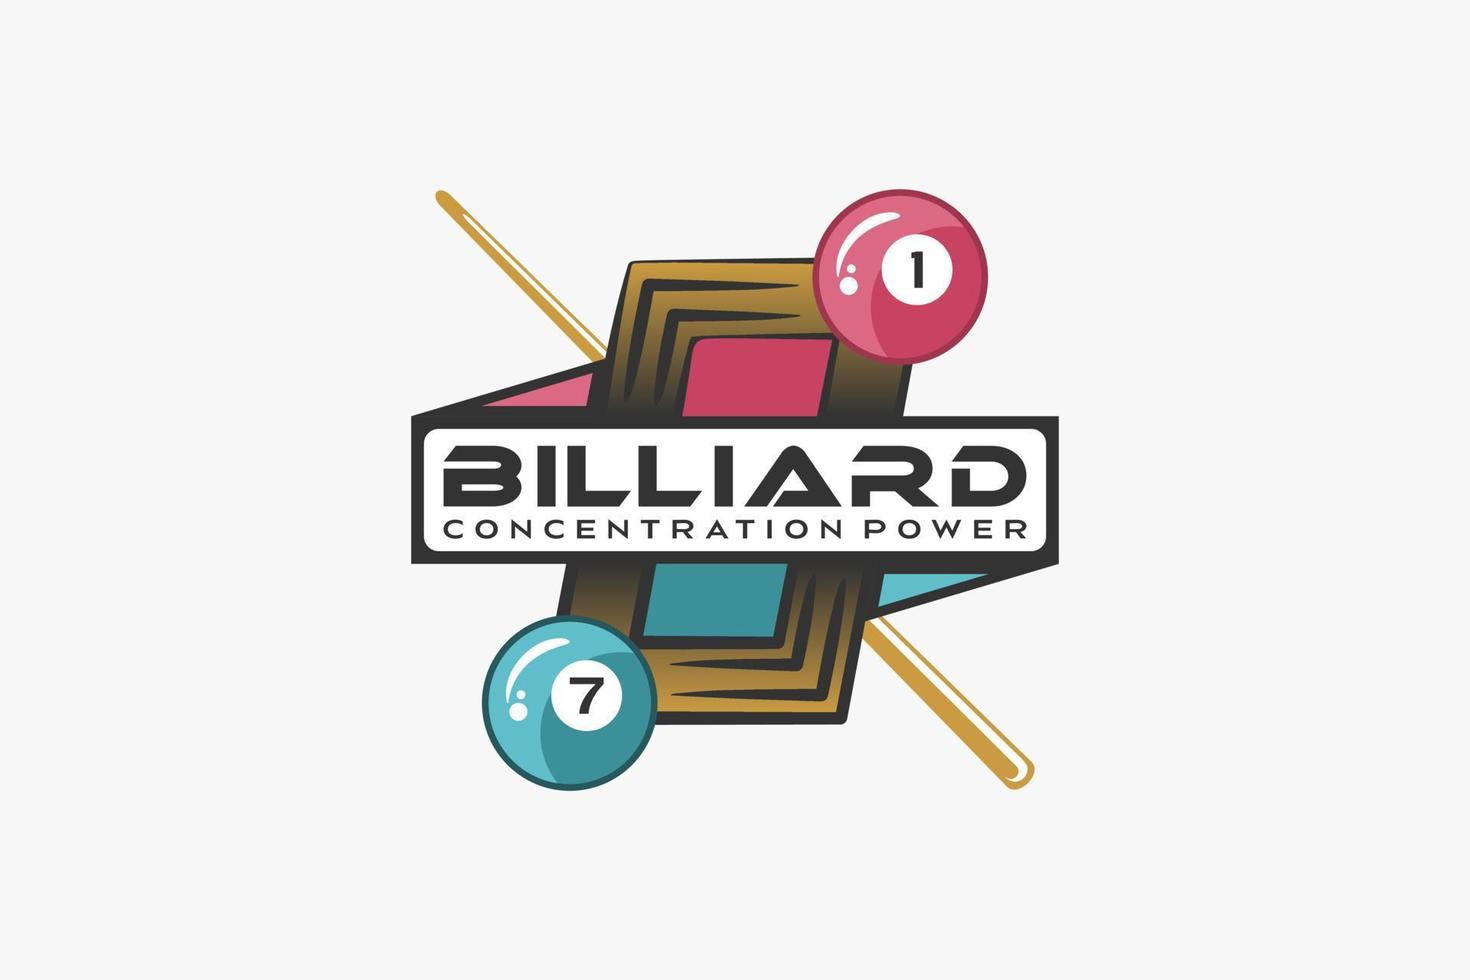 billard-logo-design mit kreativem konzept, billardkugel-symbol kombiniert mit tischsymbol und billardstock vektor